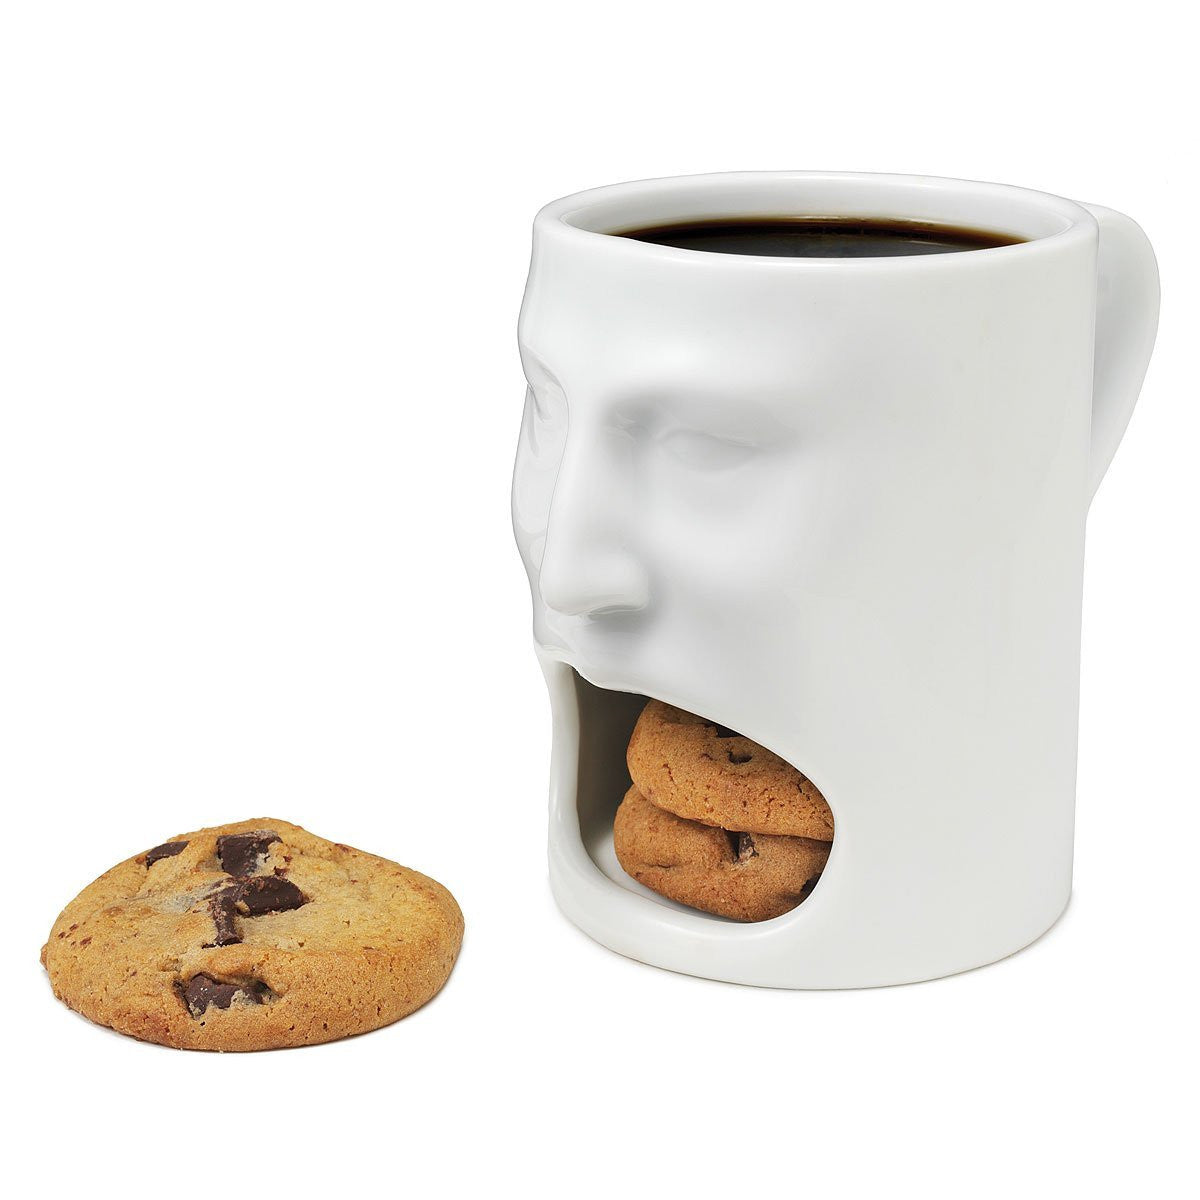 Cookie Gift Mug - Organic Cookies, 18oz Ceramic Mug